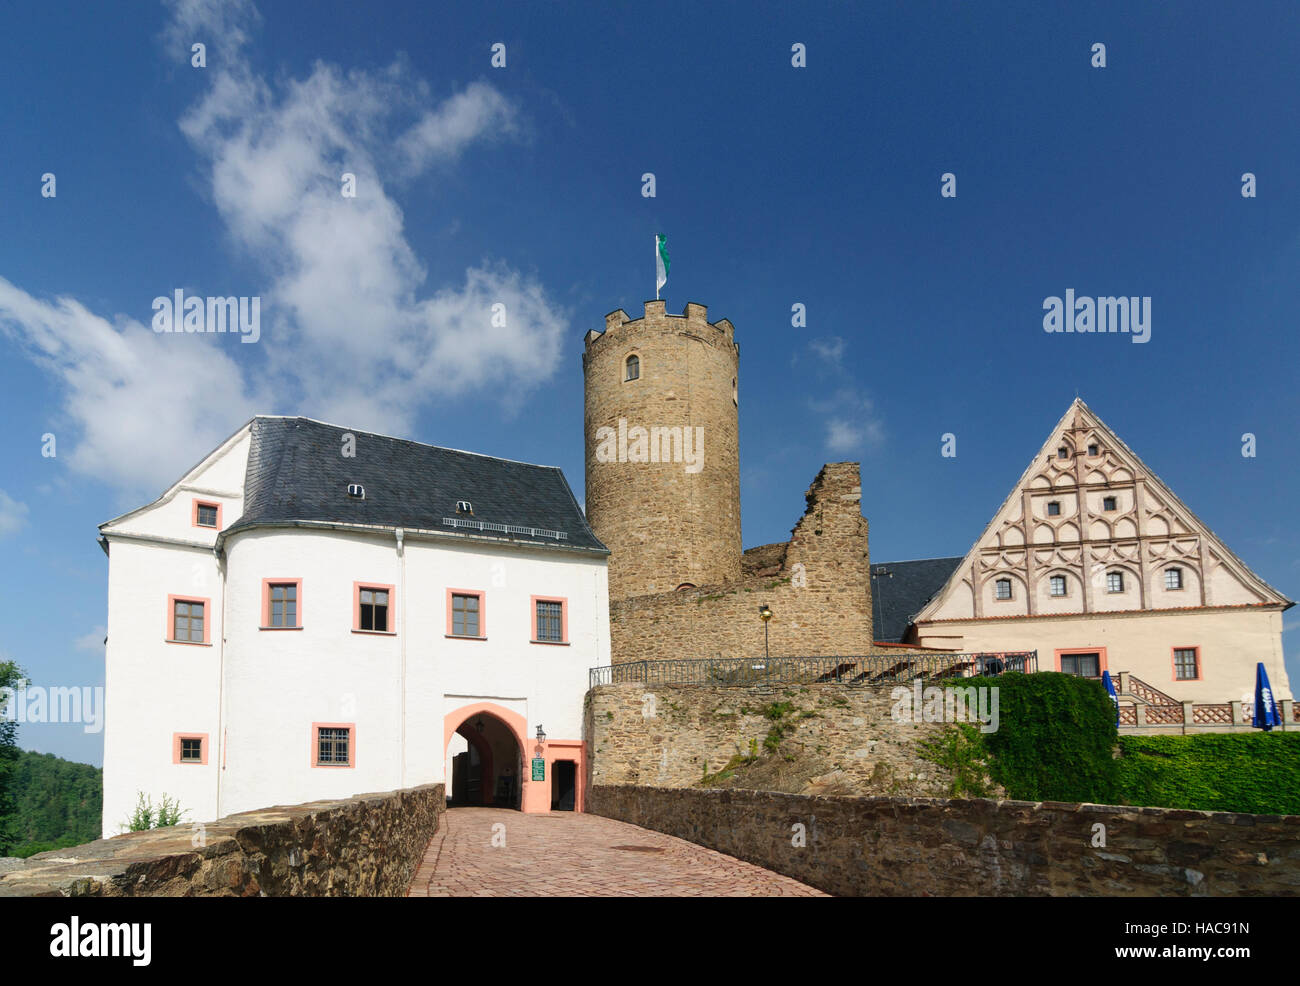 Drebach: Castello Scharfenstein, Monti Metalliferi, Monti Metalliferi, Sassonia, Sassonia, Germania Foto Stock